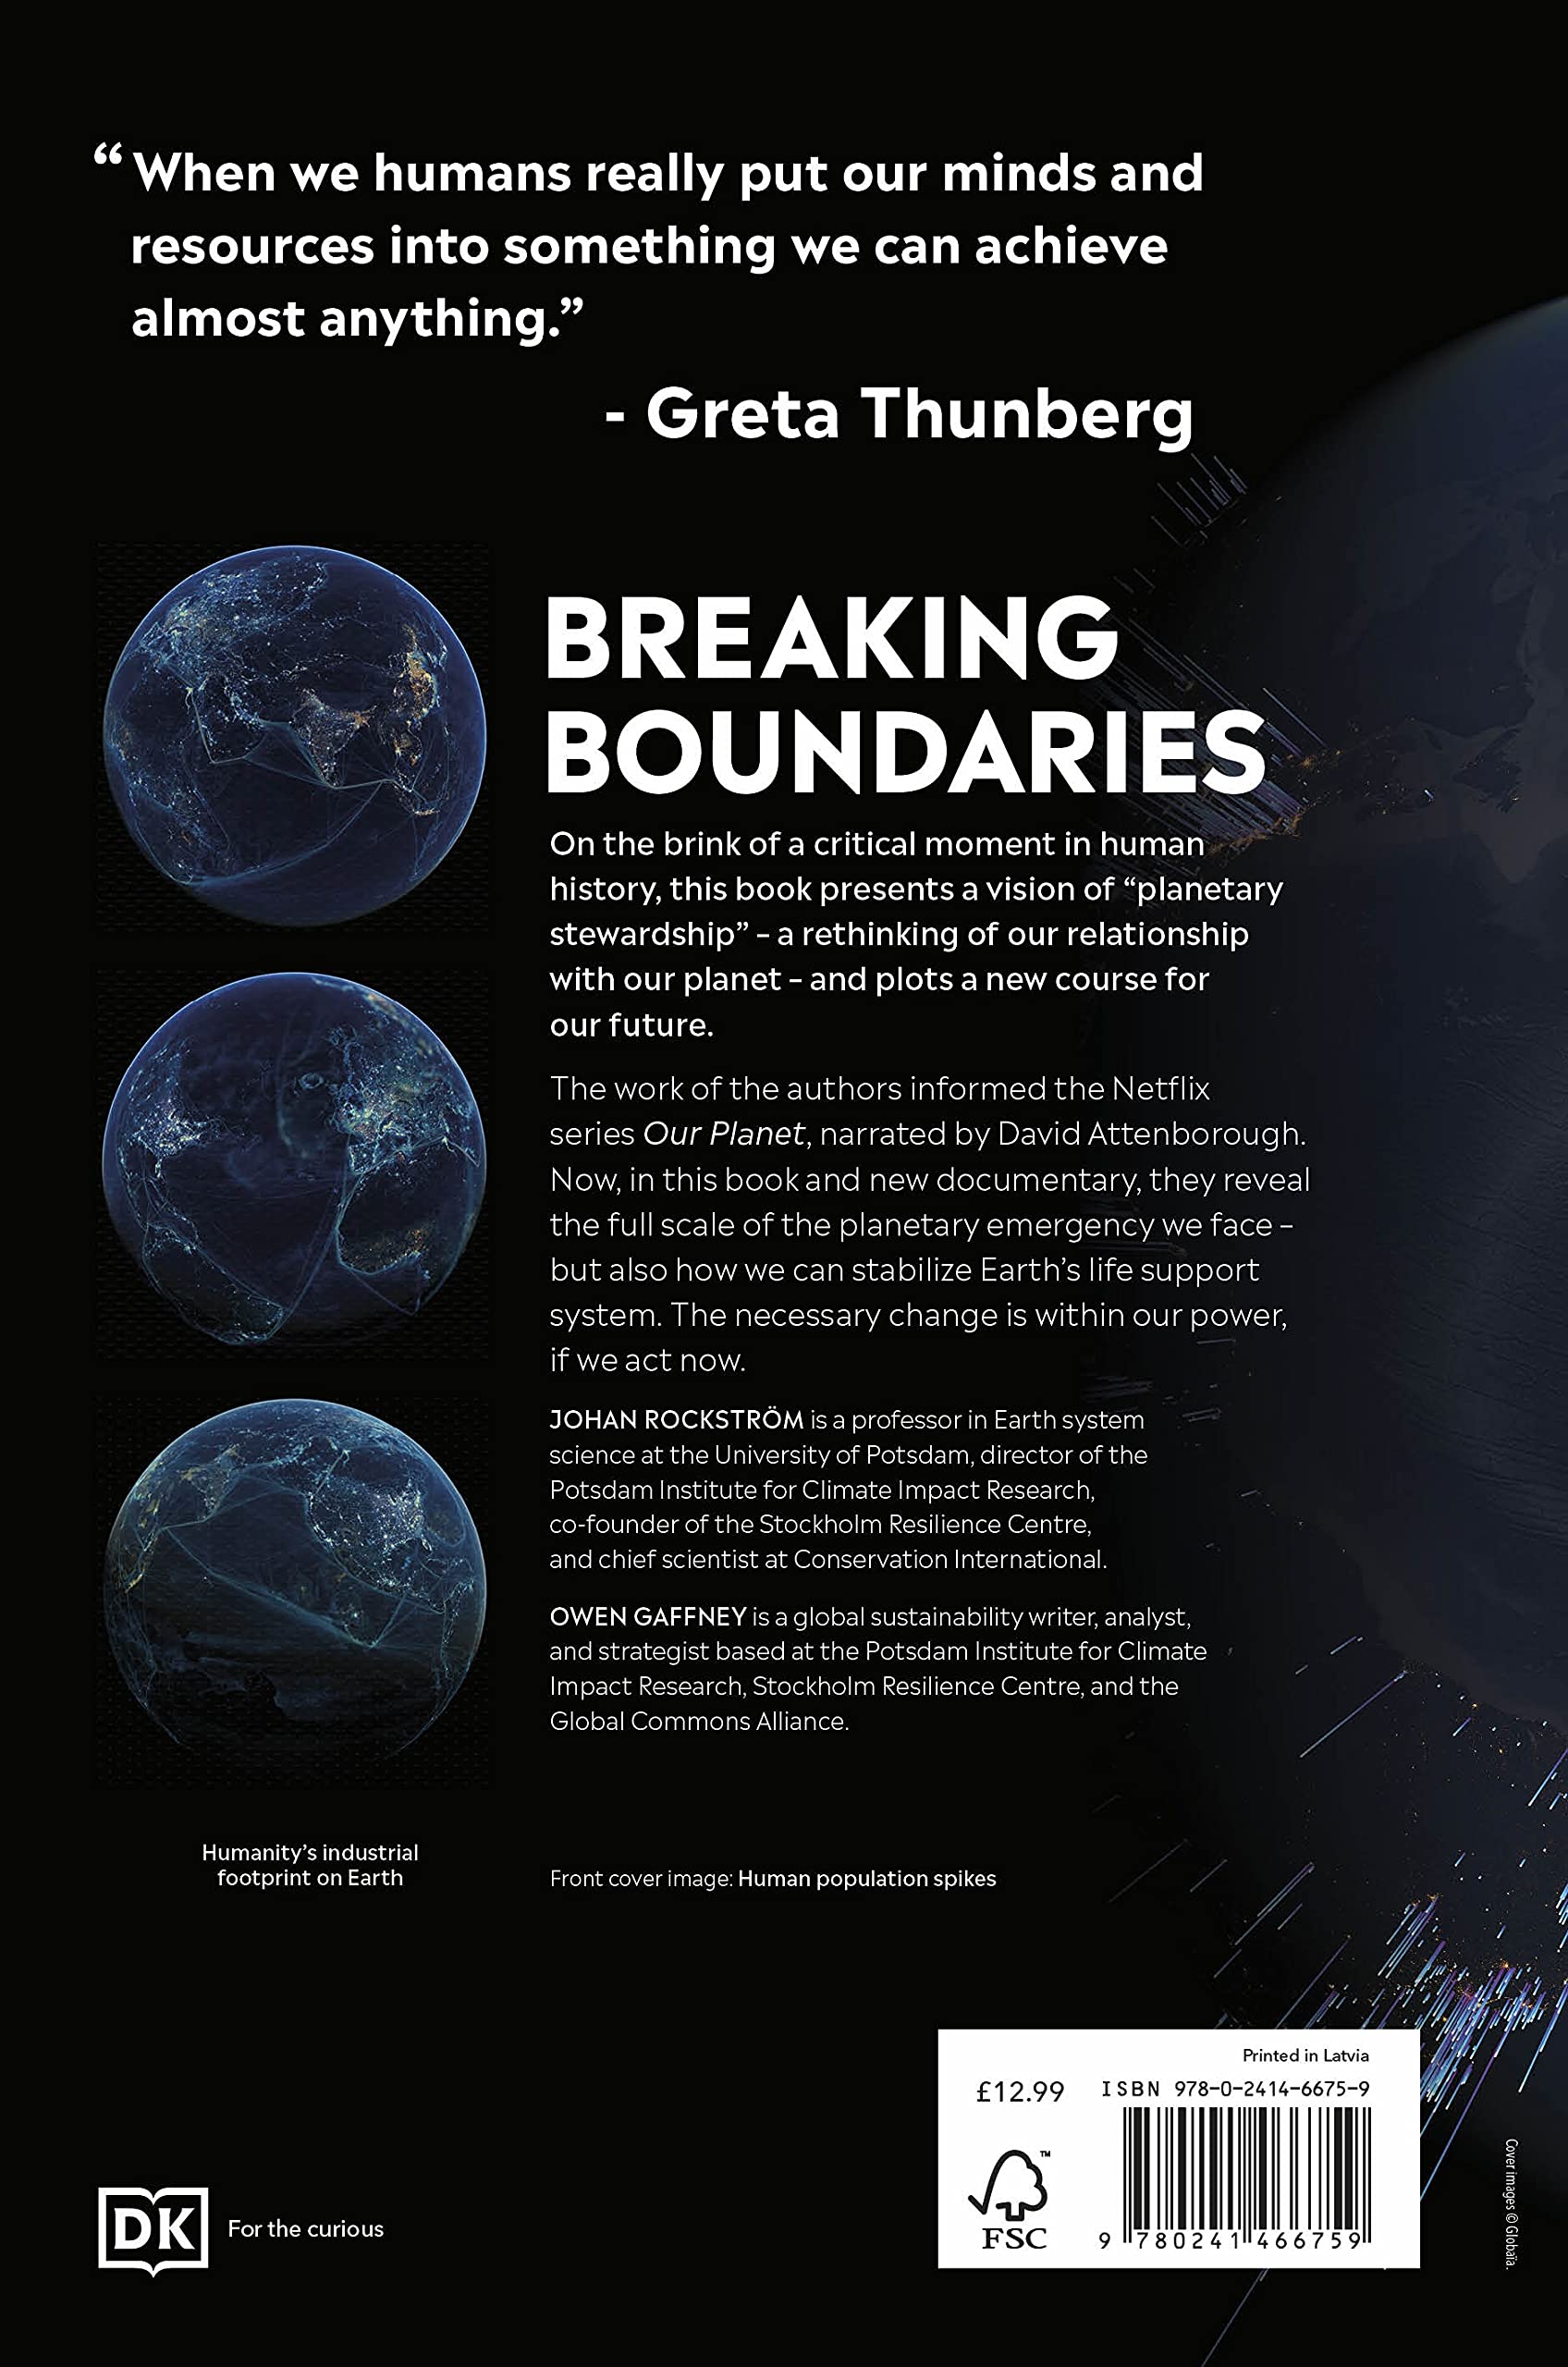 Breaking Boundaries | Johan Rockstroem, Owen Gaffney